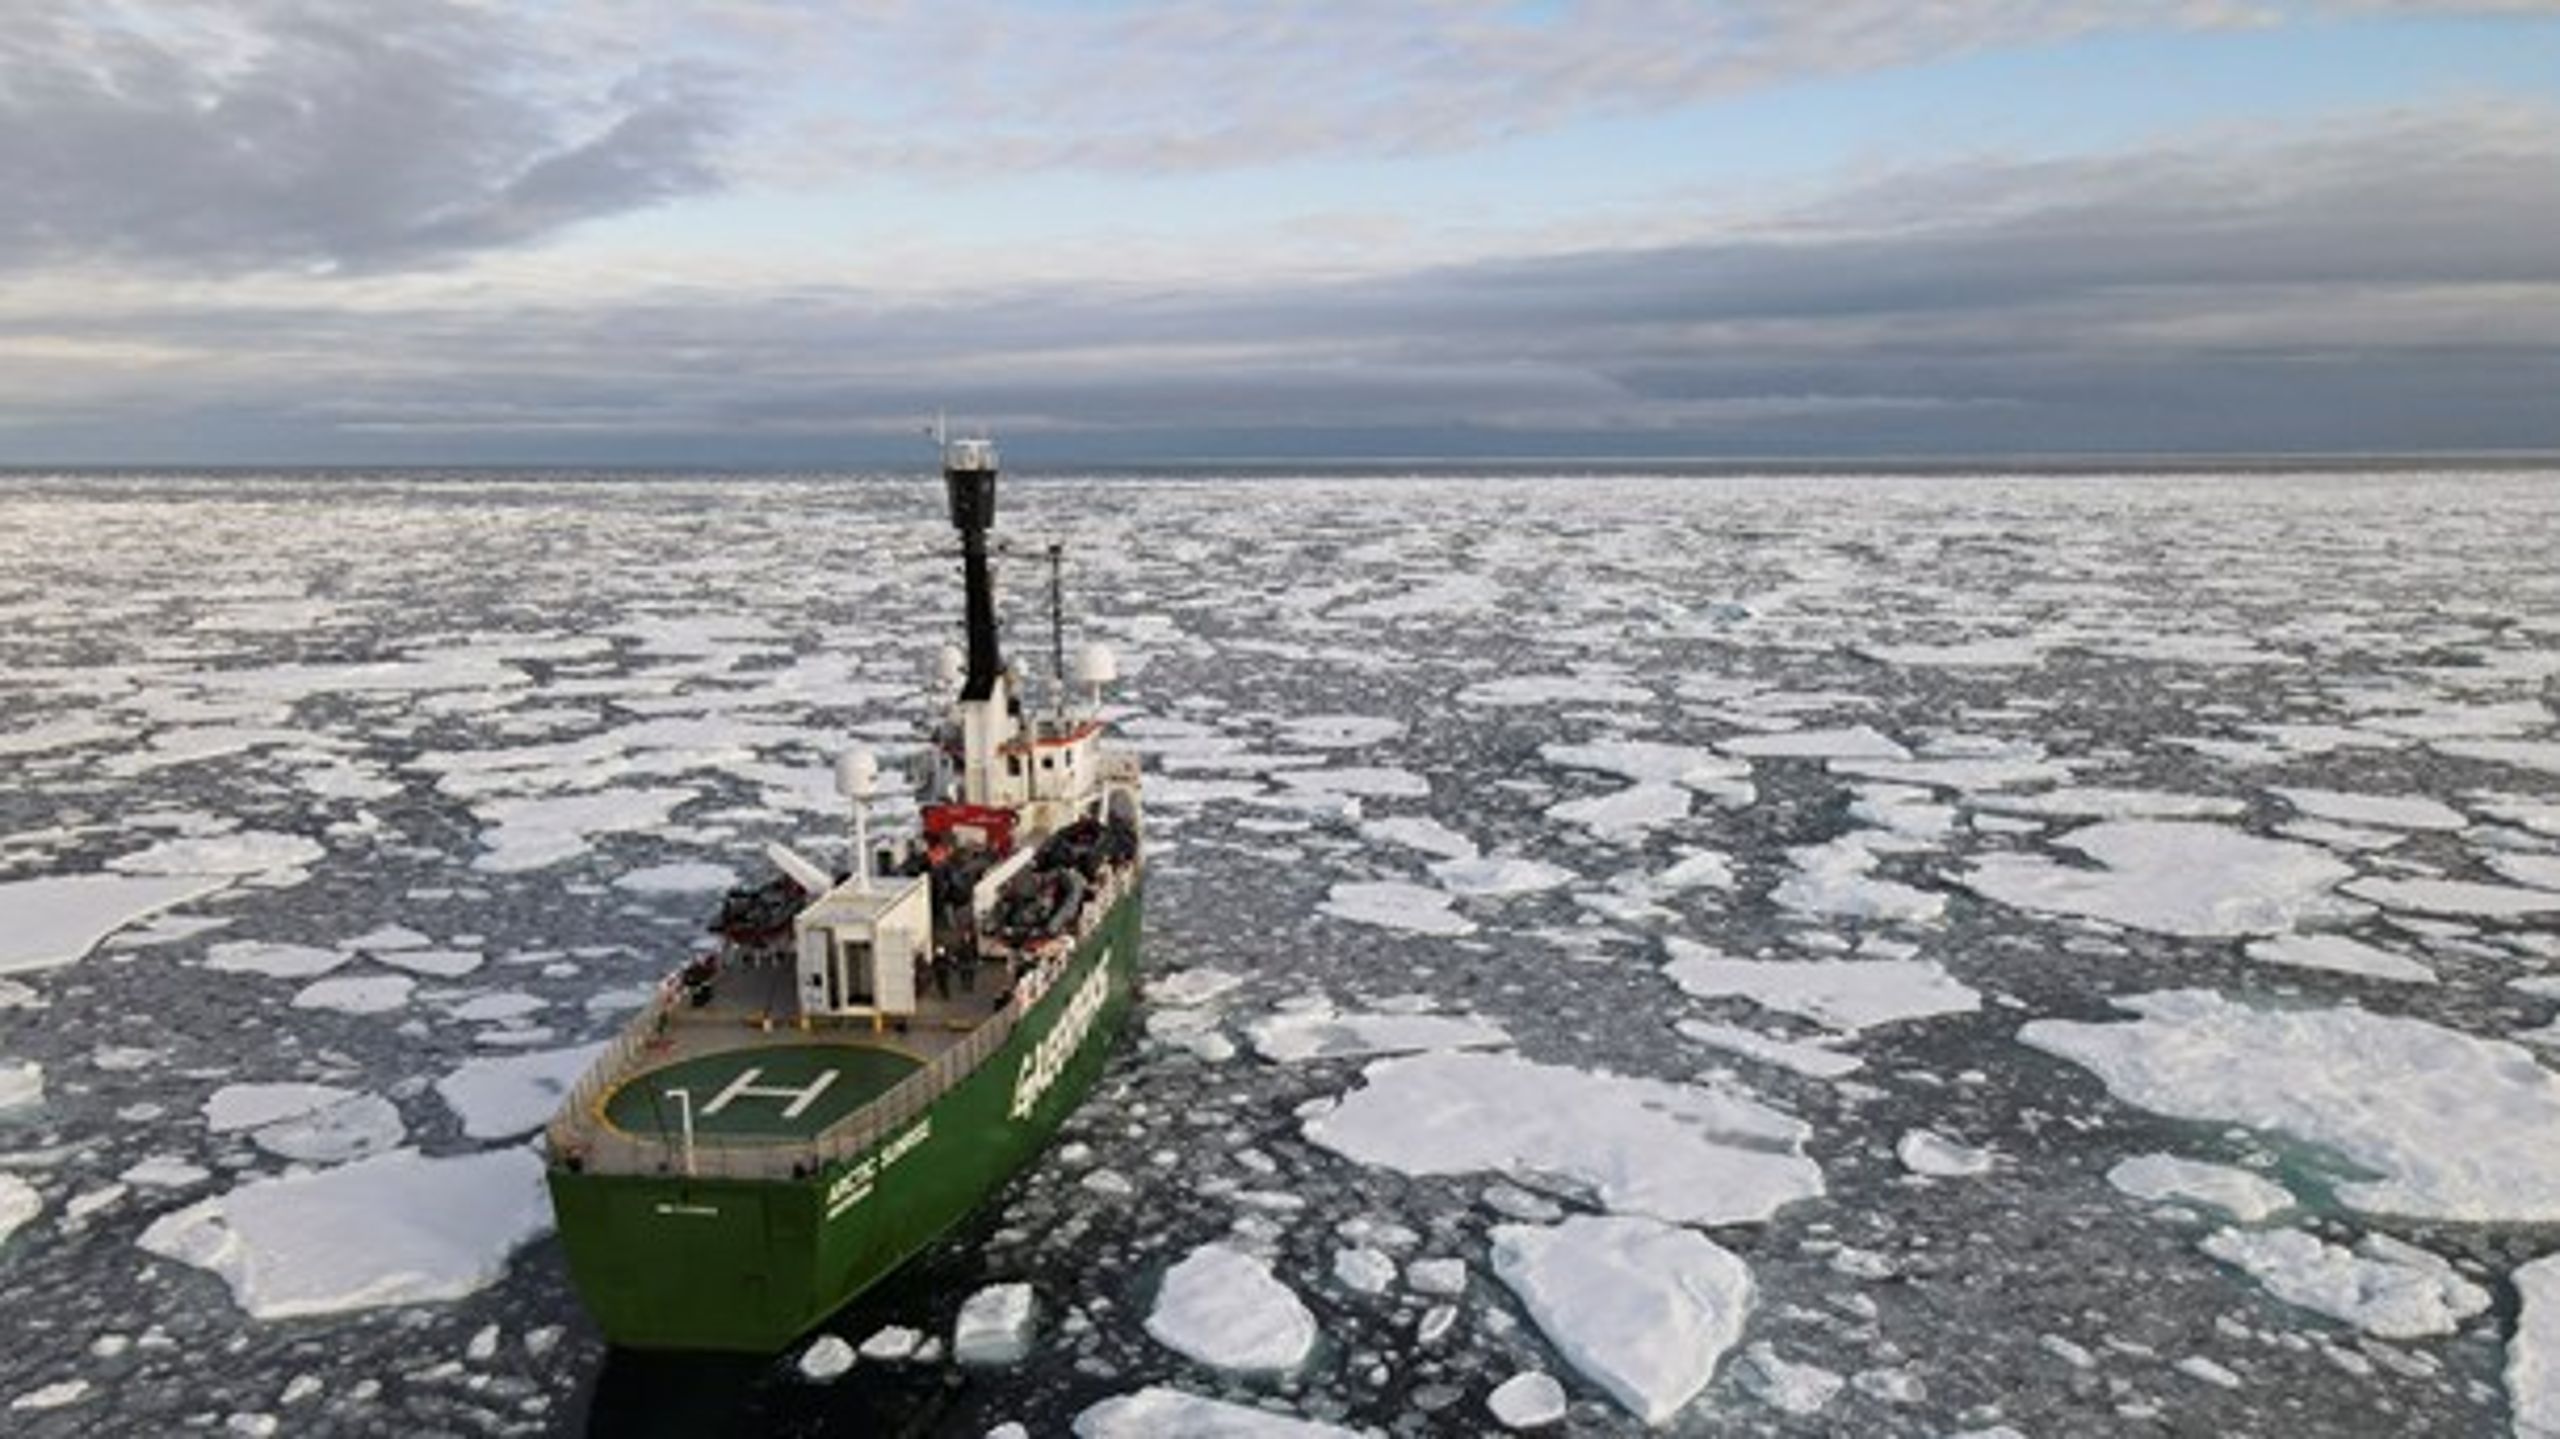 EU's maritime politik skal indtænkes i spørgsmålet om Arktis, lyder de fra de fire forskere.